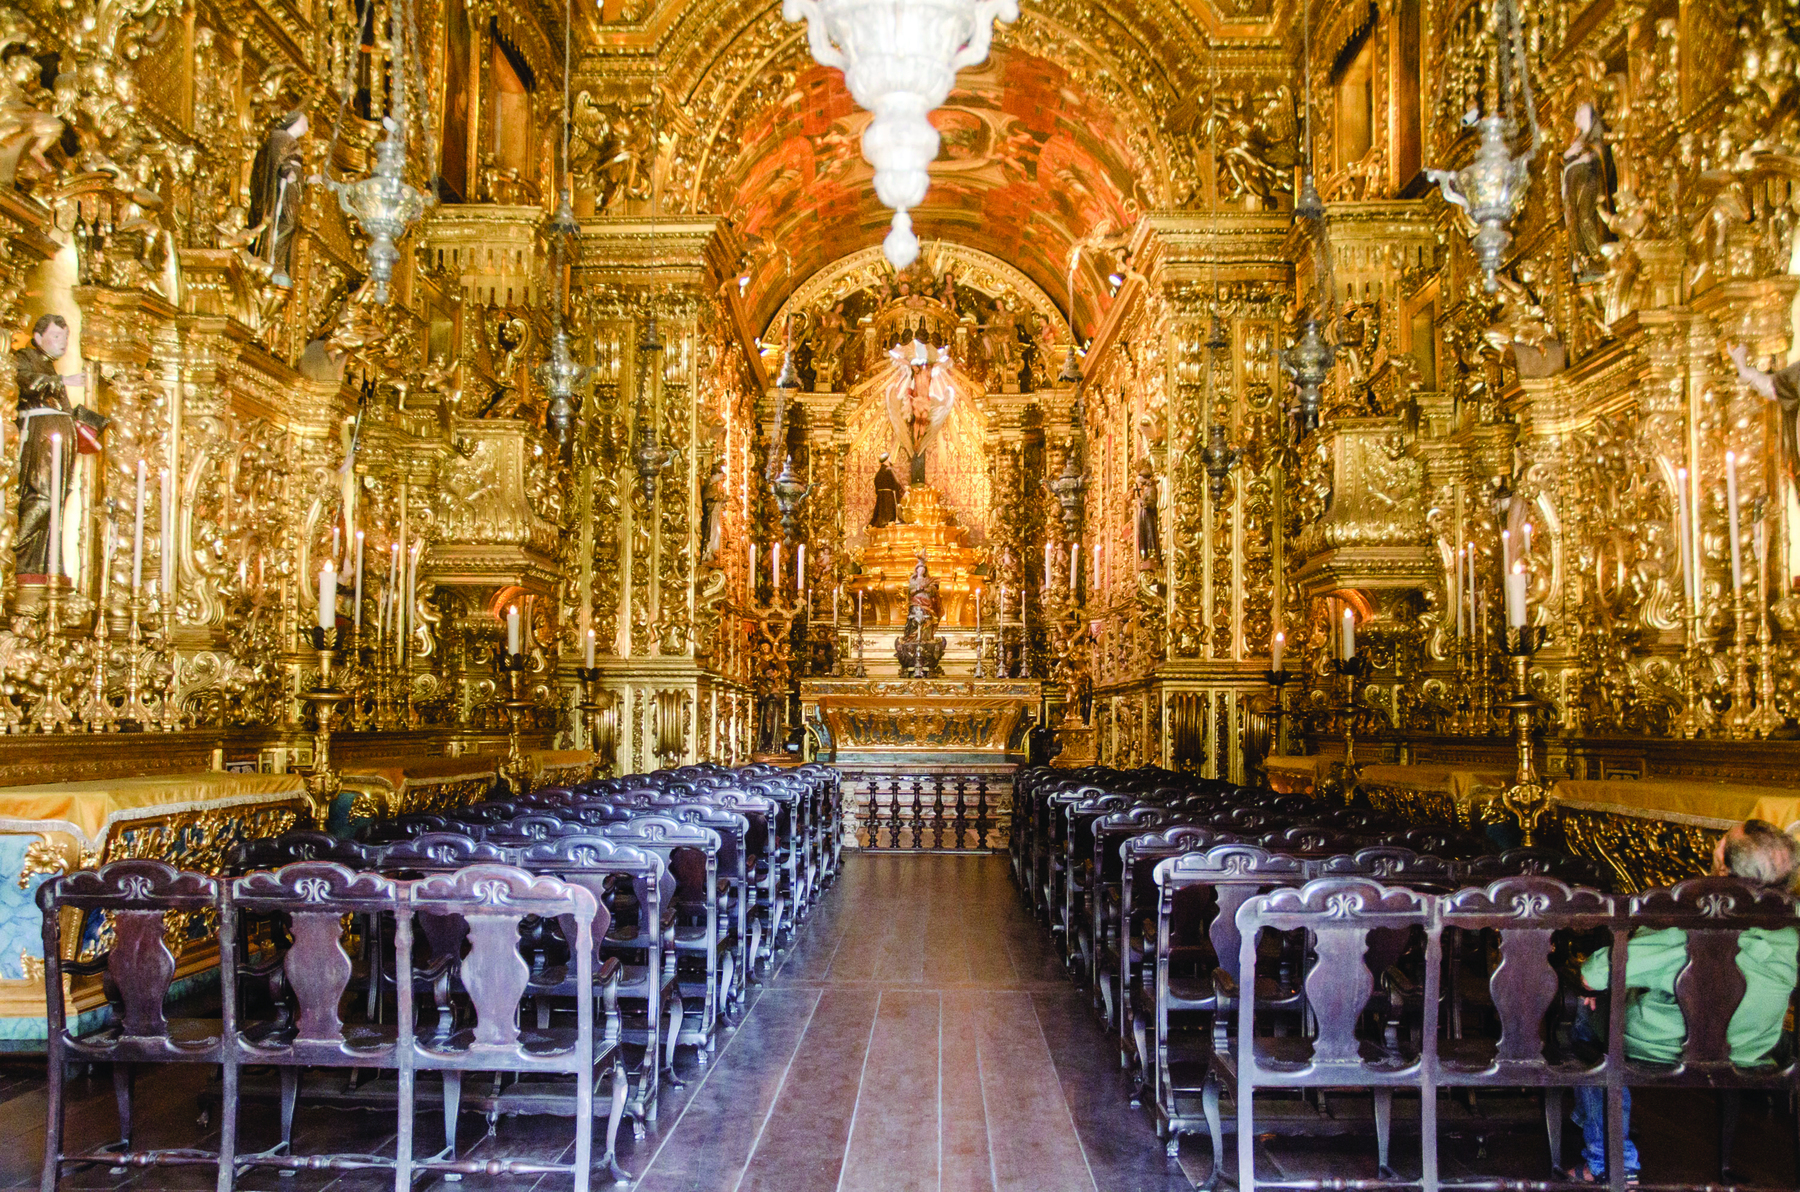 Fotografia. Vista interna de igreja com paredes e colunas douradas com muitos detalhes. Nas laterais, há fileiras de cadeiras de madeira. Ao fundo, há um altar com uma escultura central.